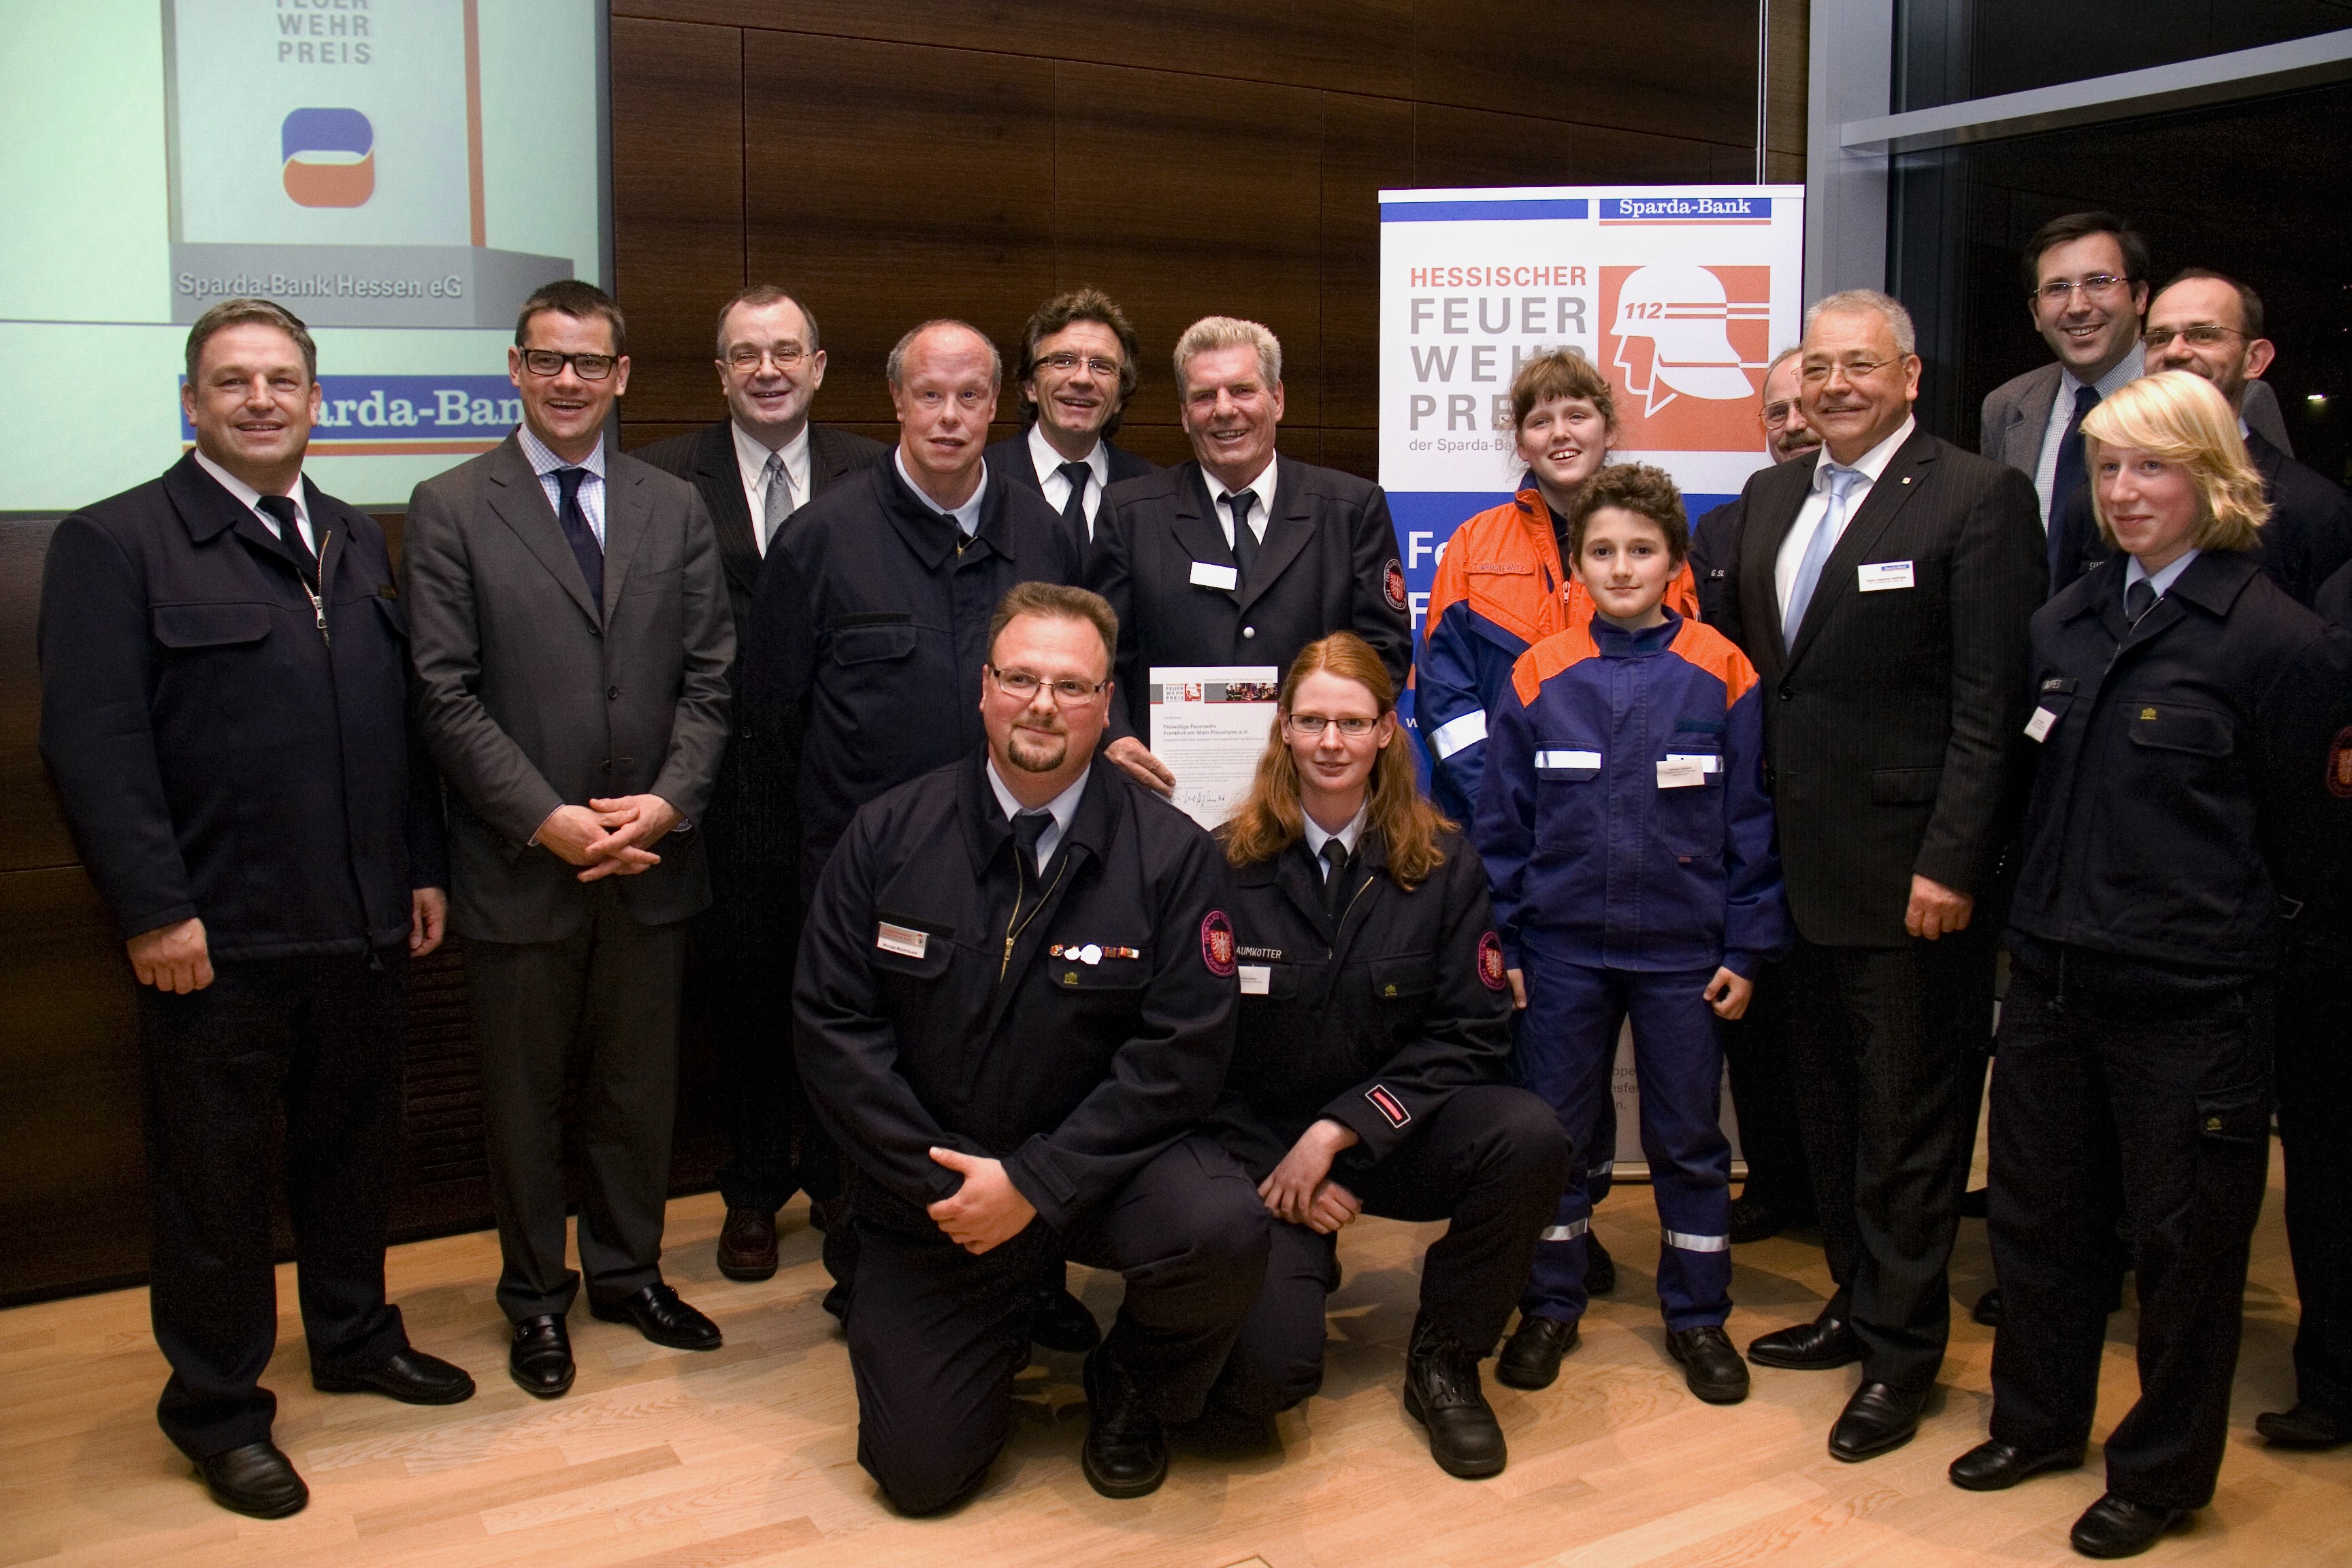 Hessischer Feuerwehrpreis Sonderpreis 2011 geht an die FF Frankfurt Praunheim